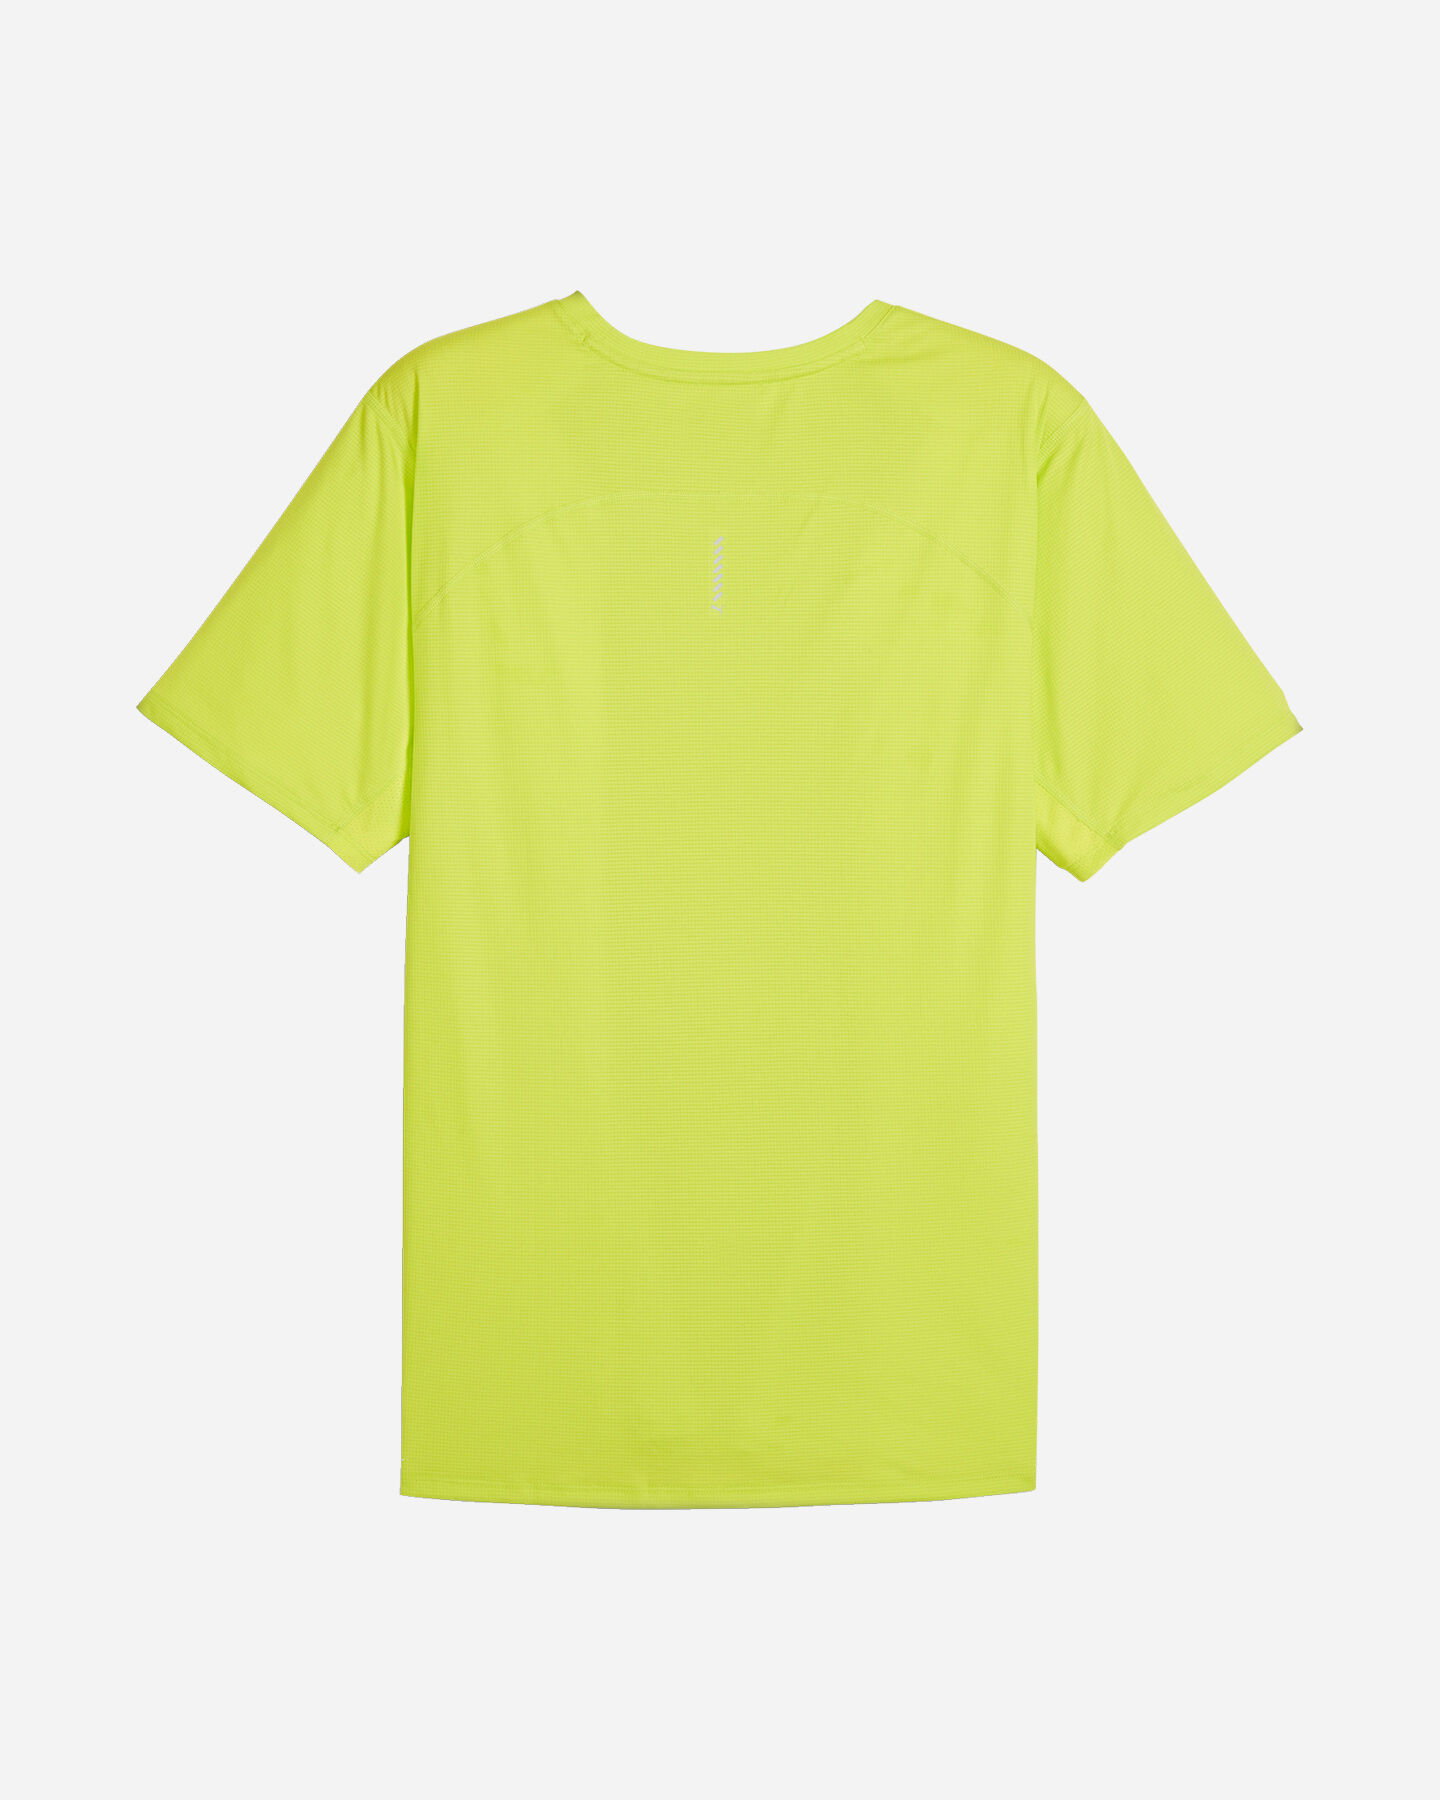  T-Shirt running PUMA RUN FAVORITE M S5661755|39|M scatto 1